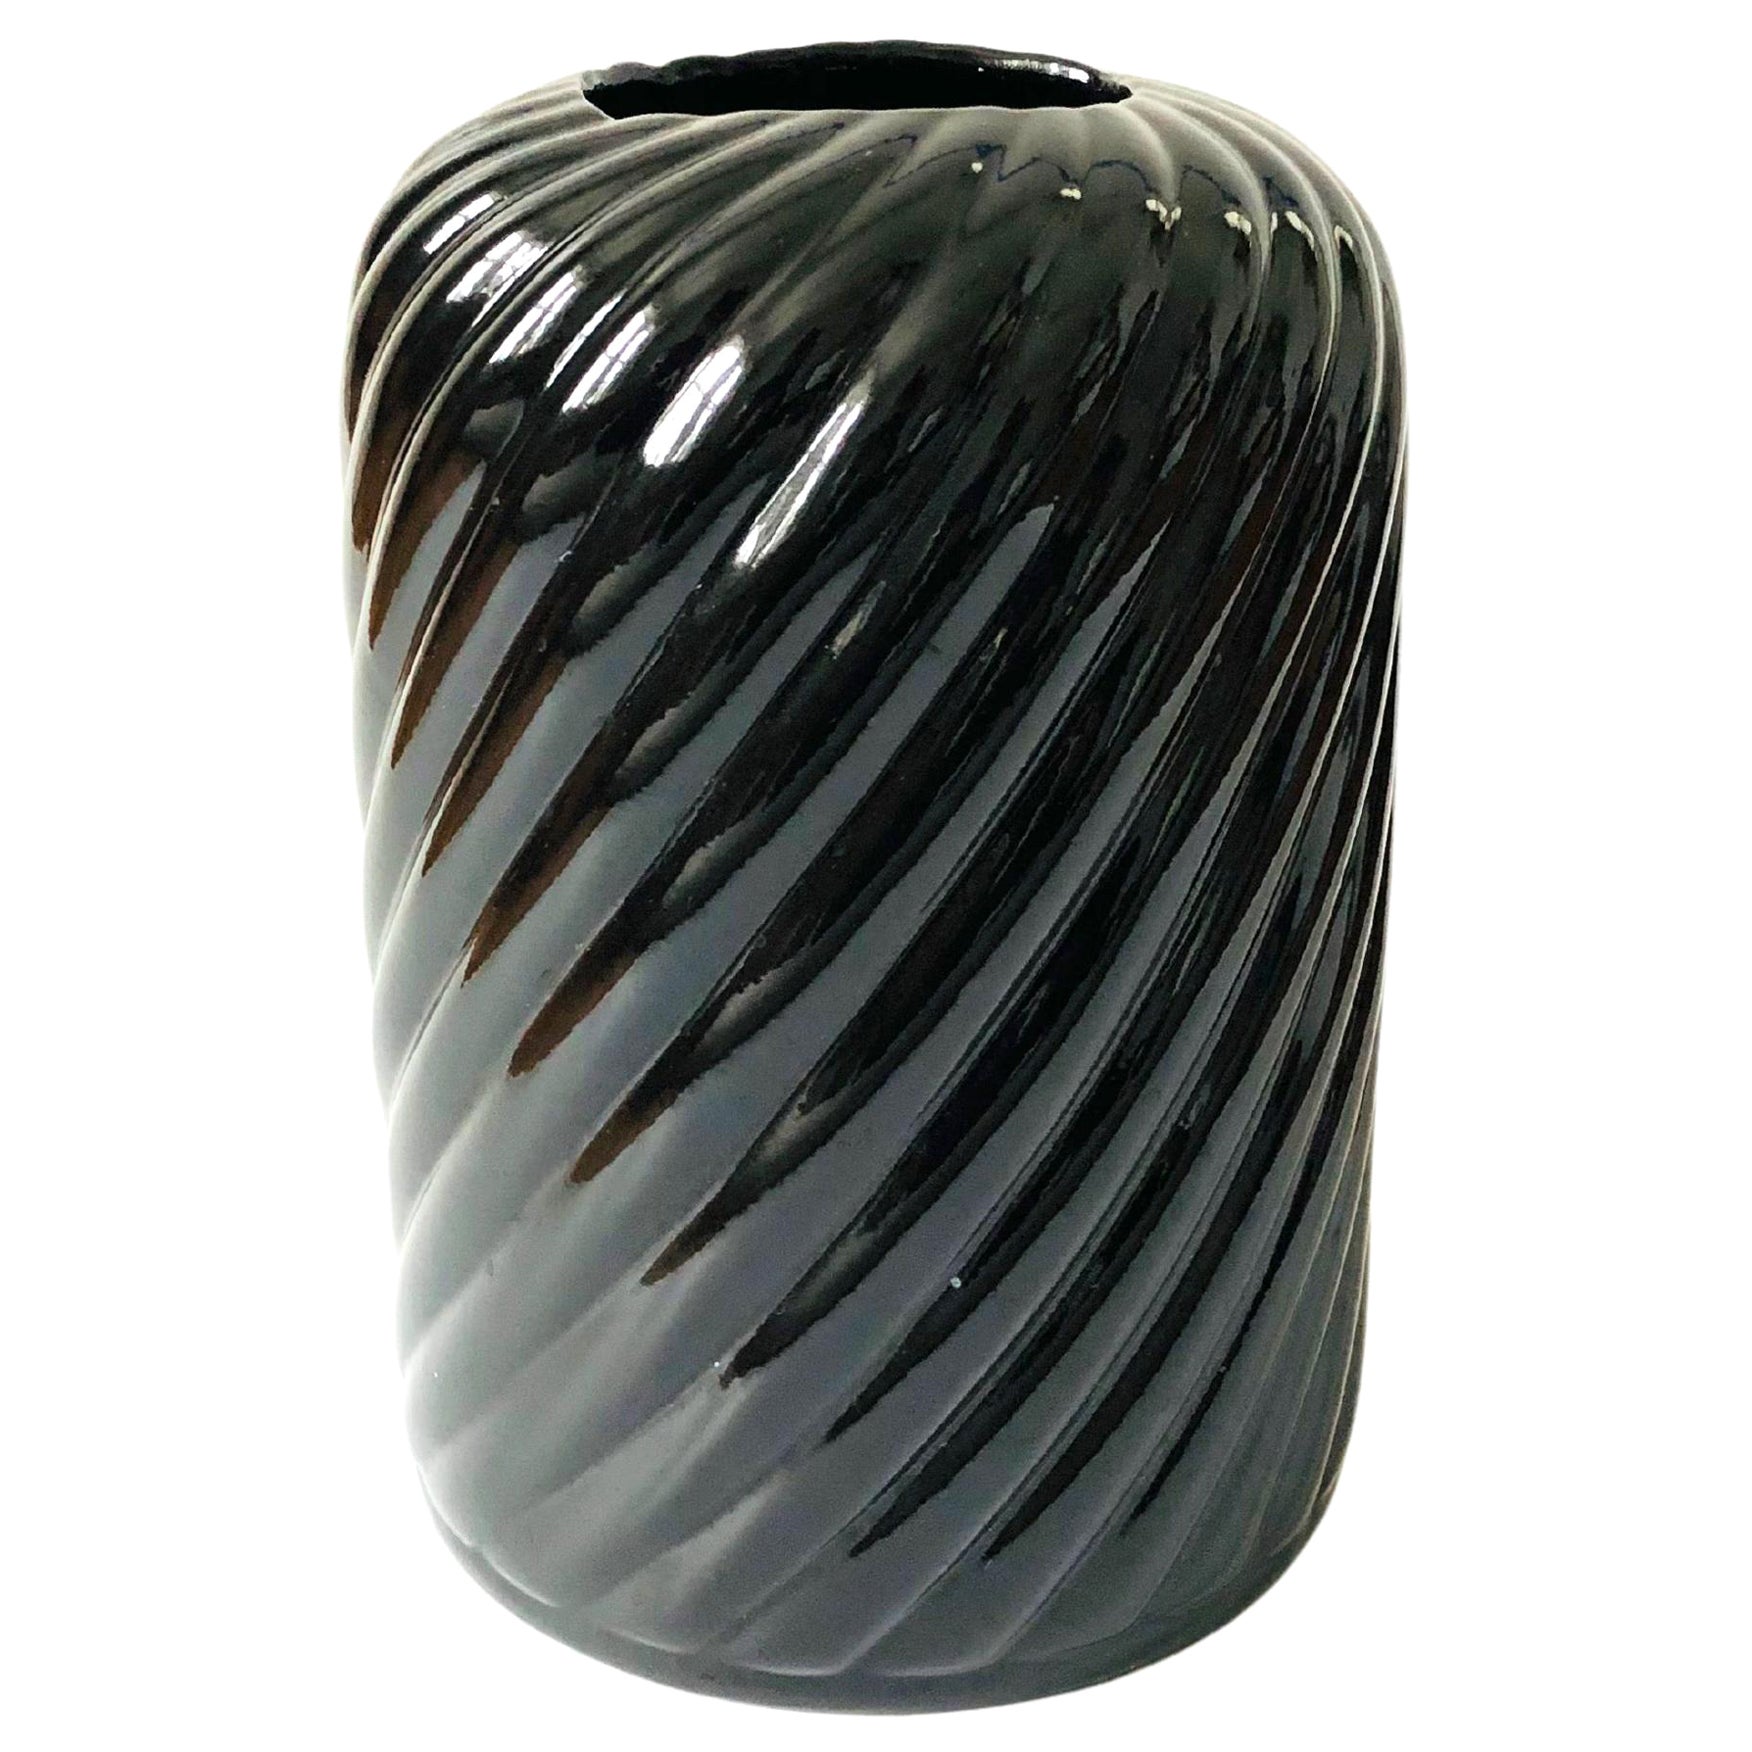 Grand vase tourbillon en céramique noire vintage et moderne des années 80